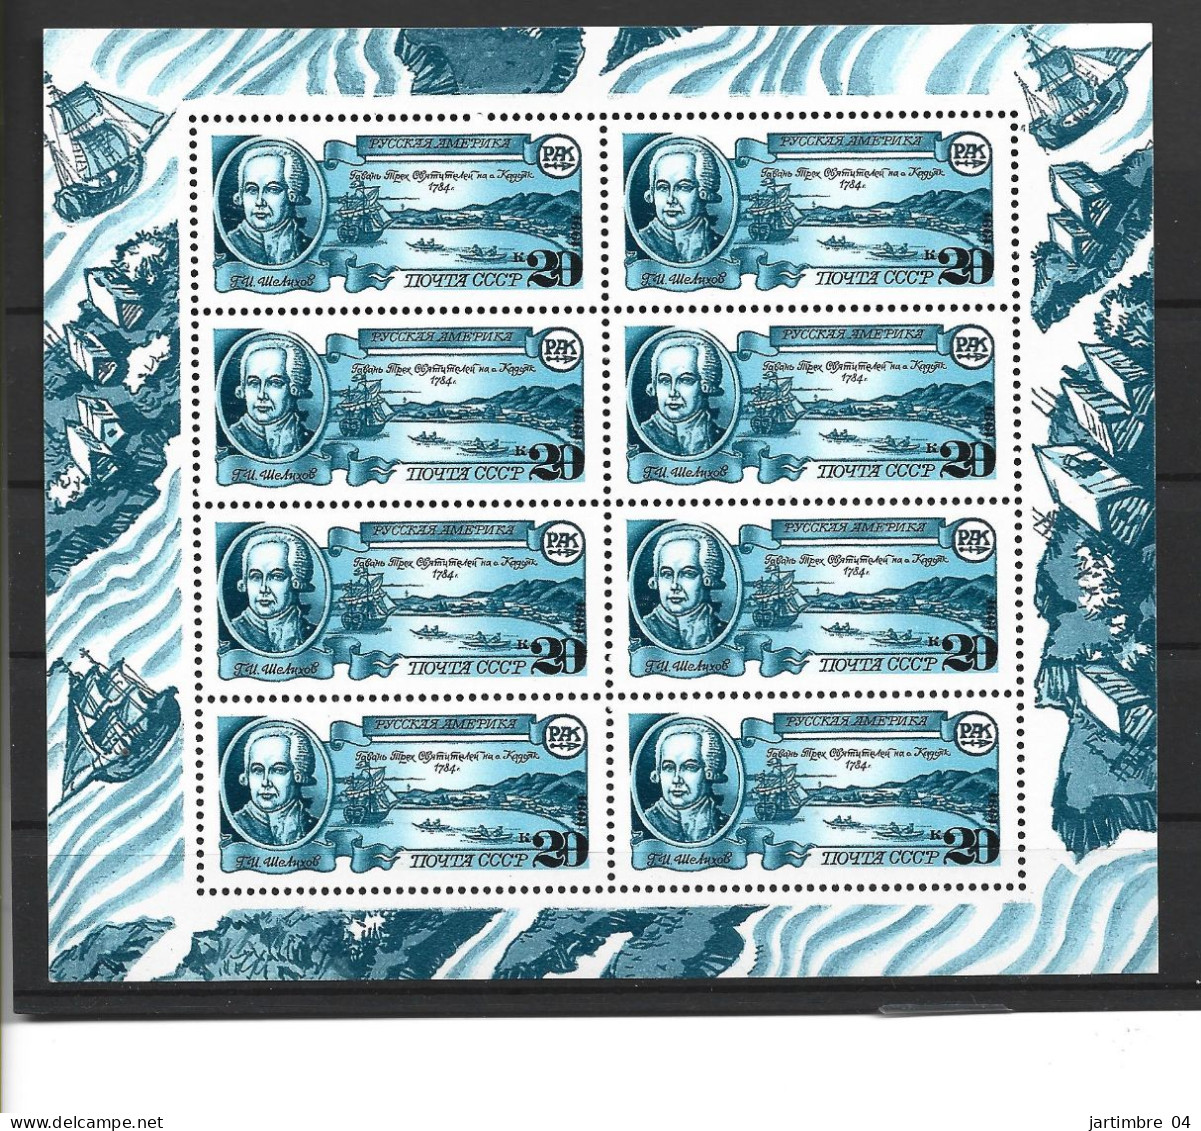 1991 Russie - URSS 5840** Découverte Amérique, Comptoirs Russes, 5840-42, Kleinbogen - Unused Stamps